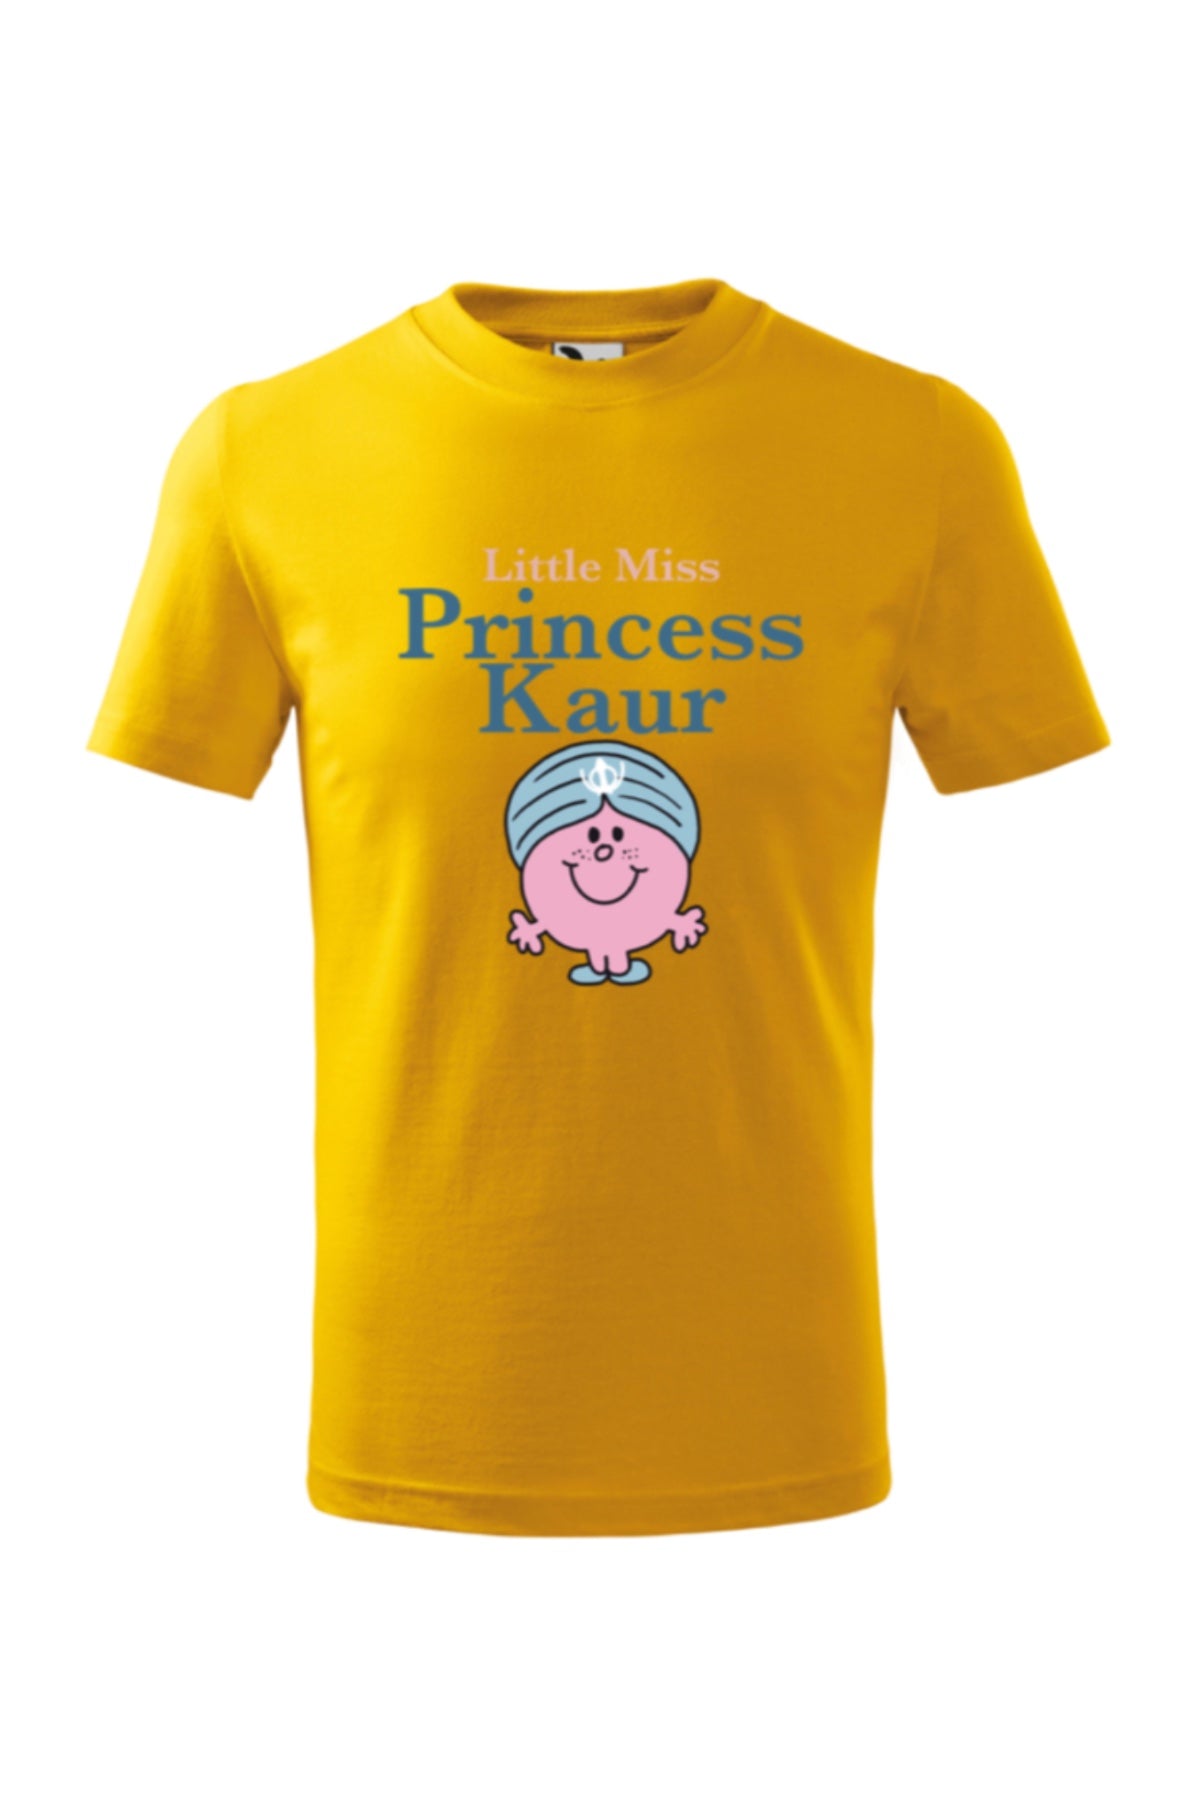 Princess Kaur